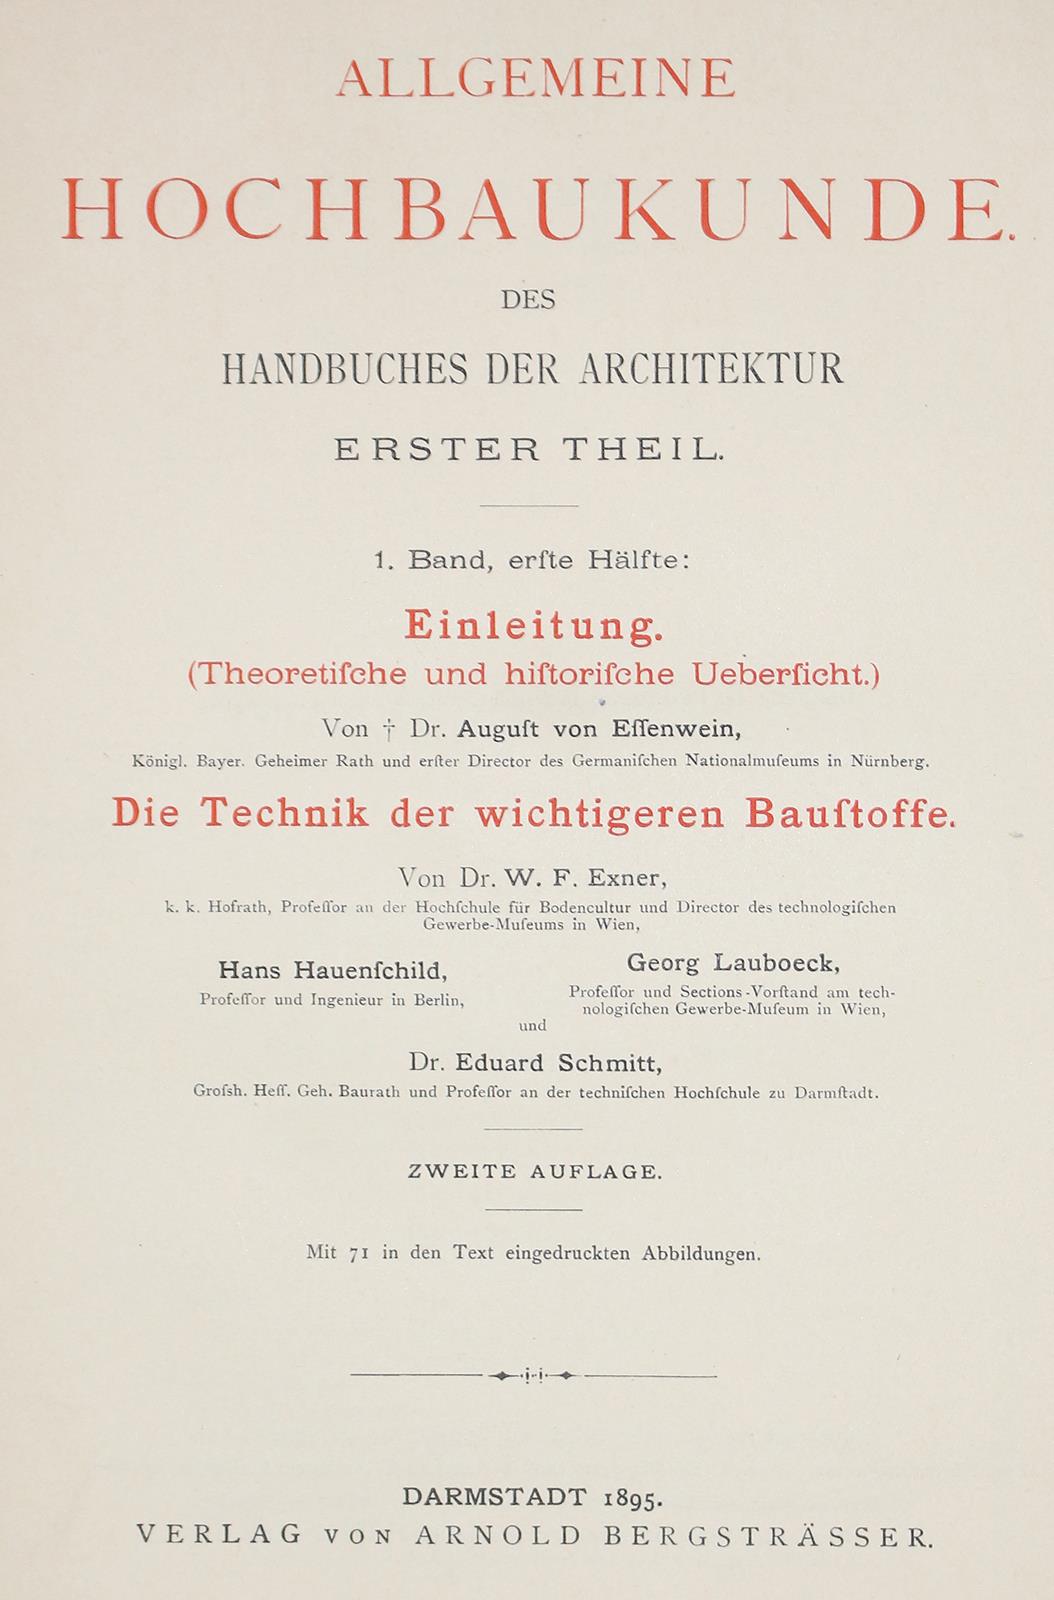 Handbuch der Architektur. | Bild Nr.1